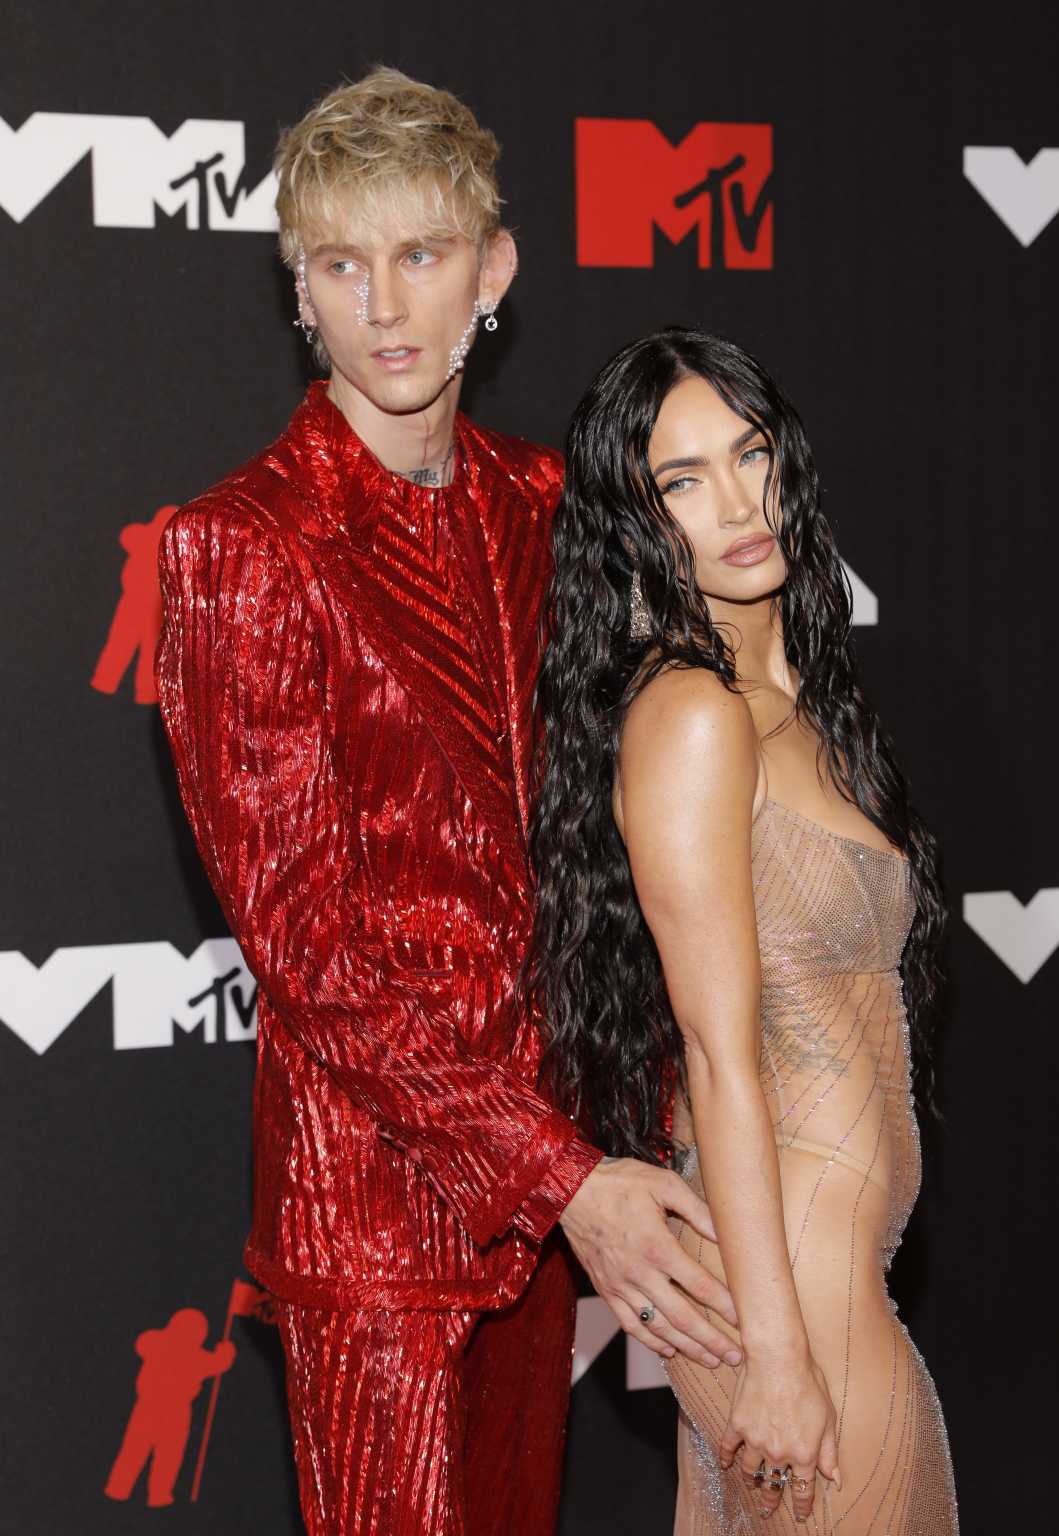 Μέγκαν Φοξ: Με άκρως αποκαλυπτικό φόρεμα στα βραβεία του MTV - LIFESTYLE